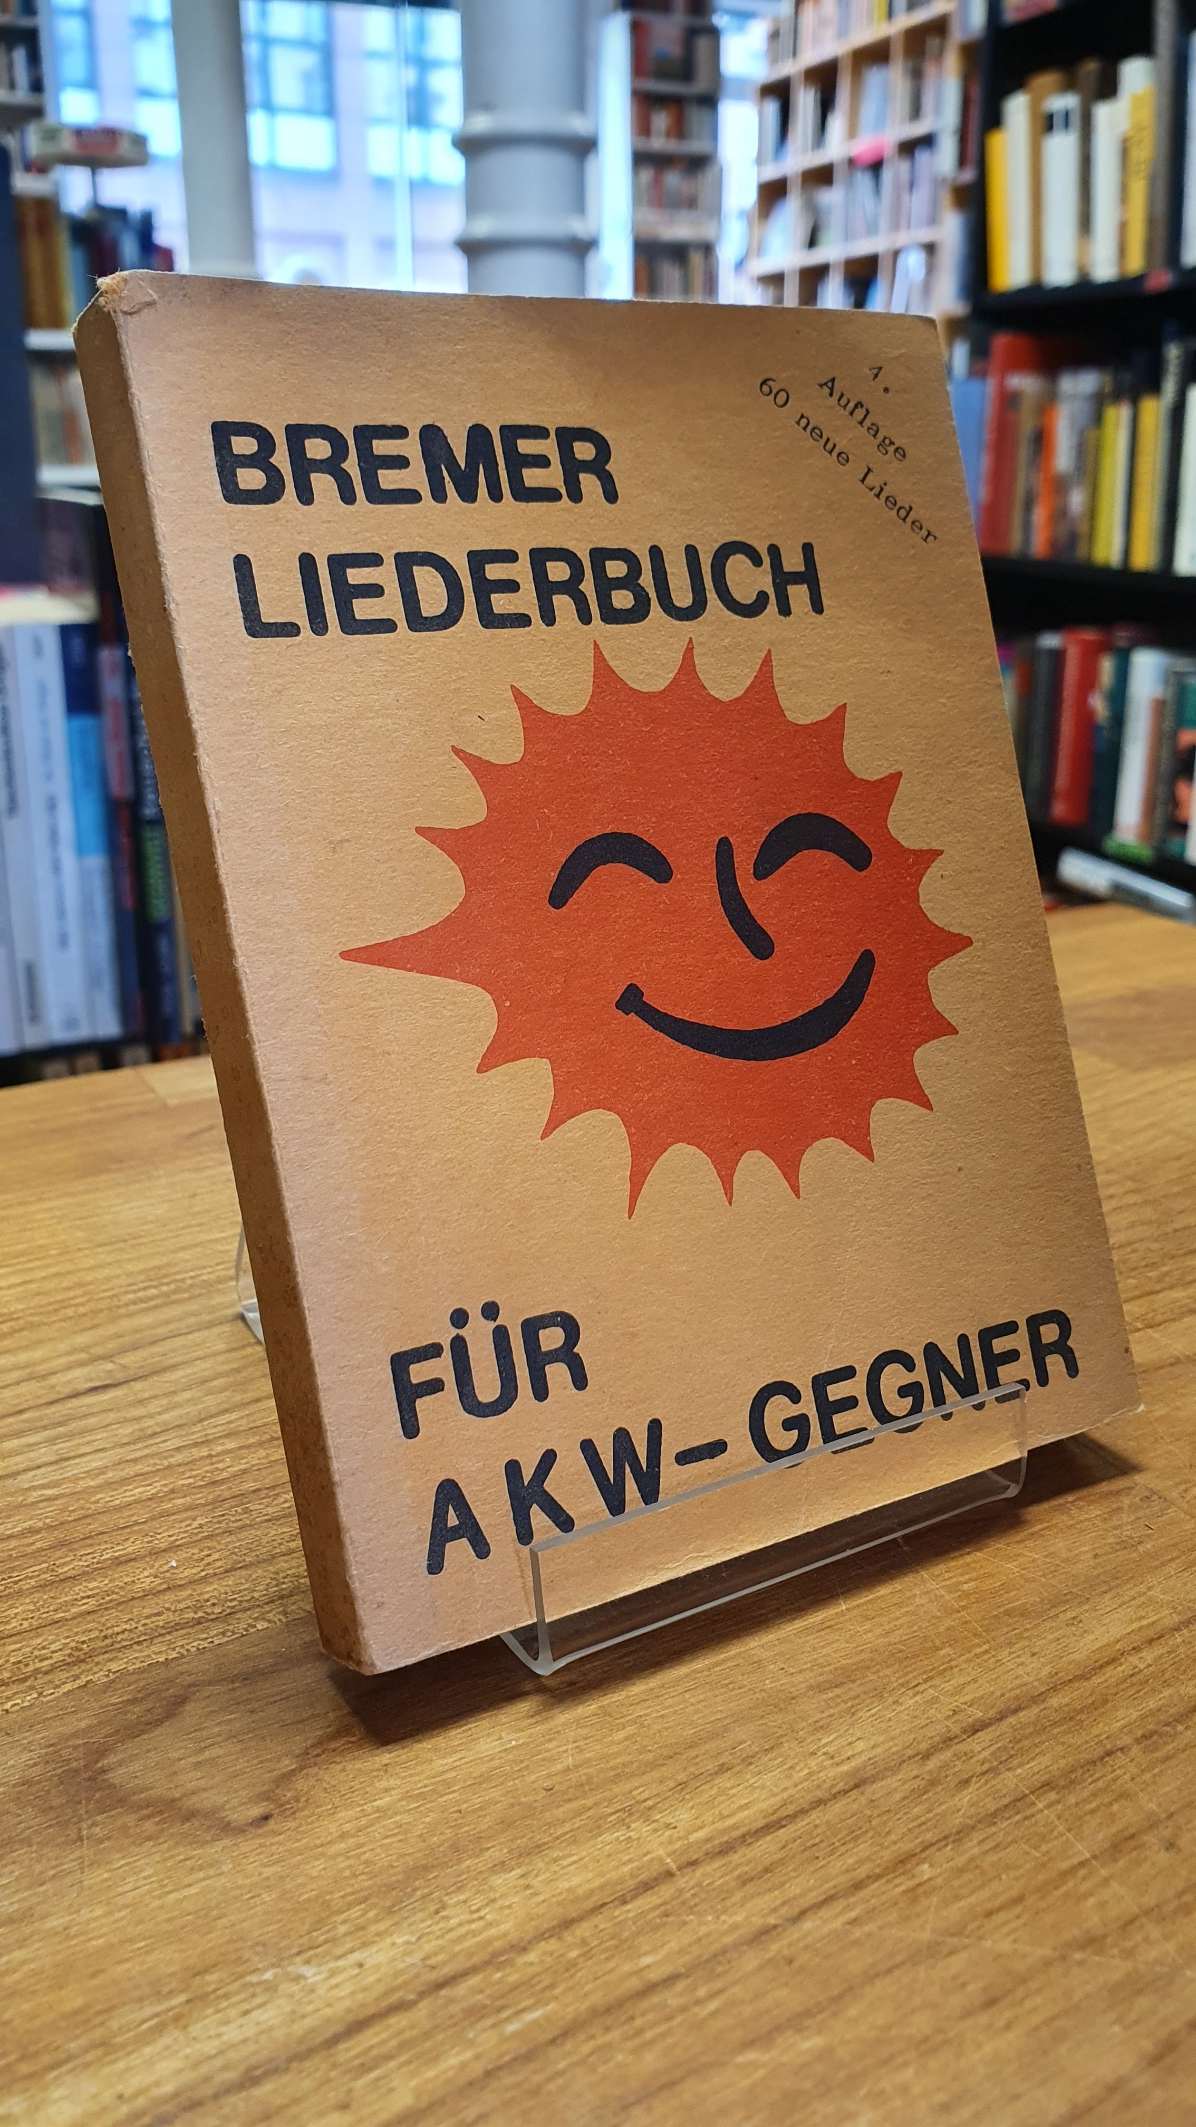 Bremer Liederbuch für AKW-Gegner,